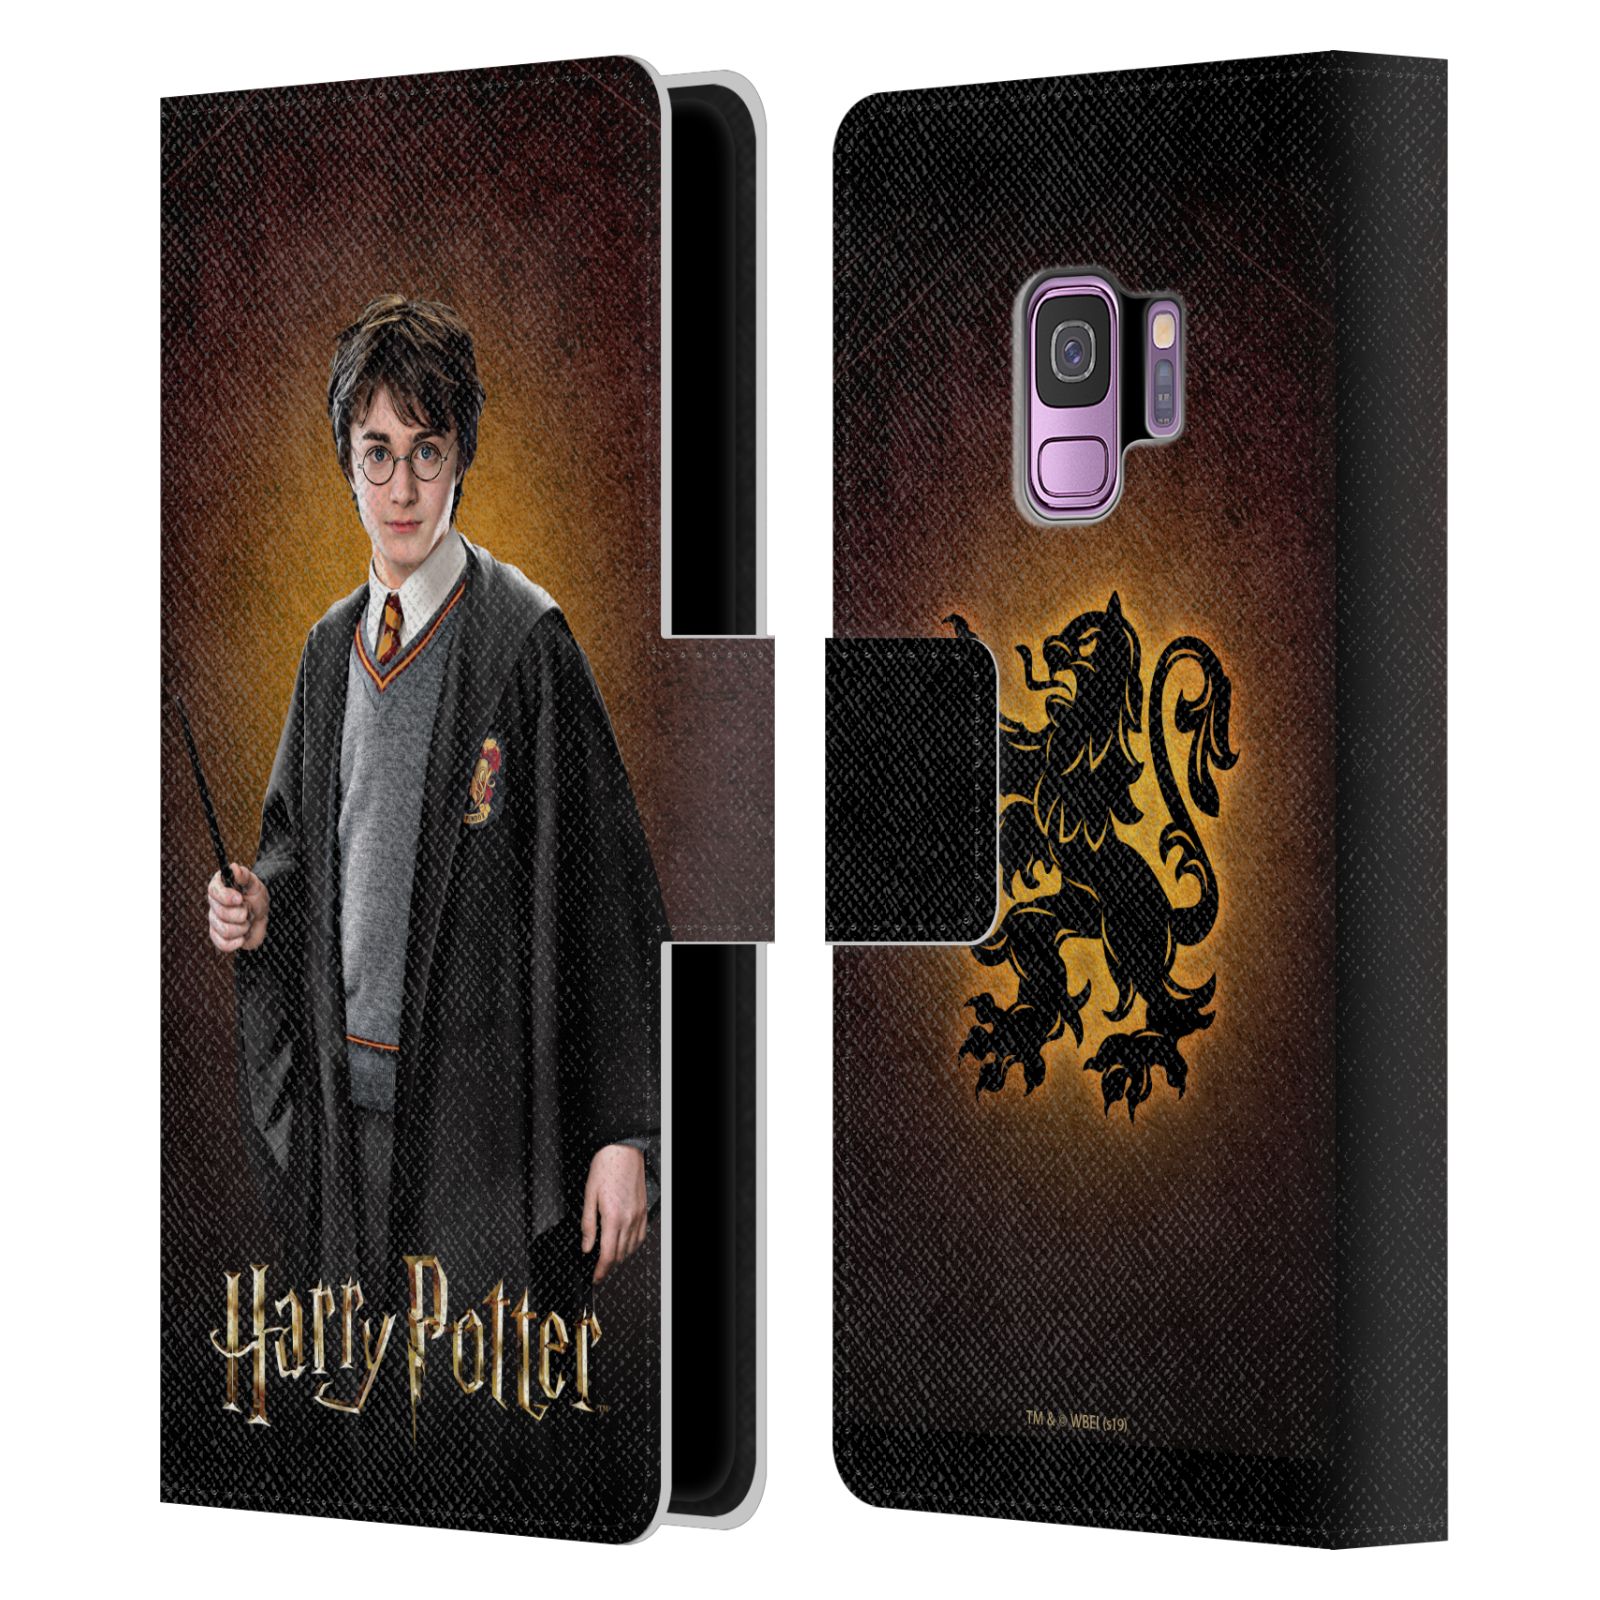 Pouzdro na mobil Samsung Galaxy S9 - HEAD CASE - Harry Potter - Harry Potter portrét